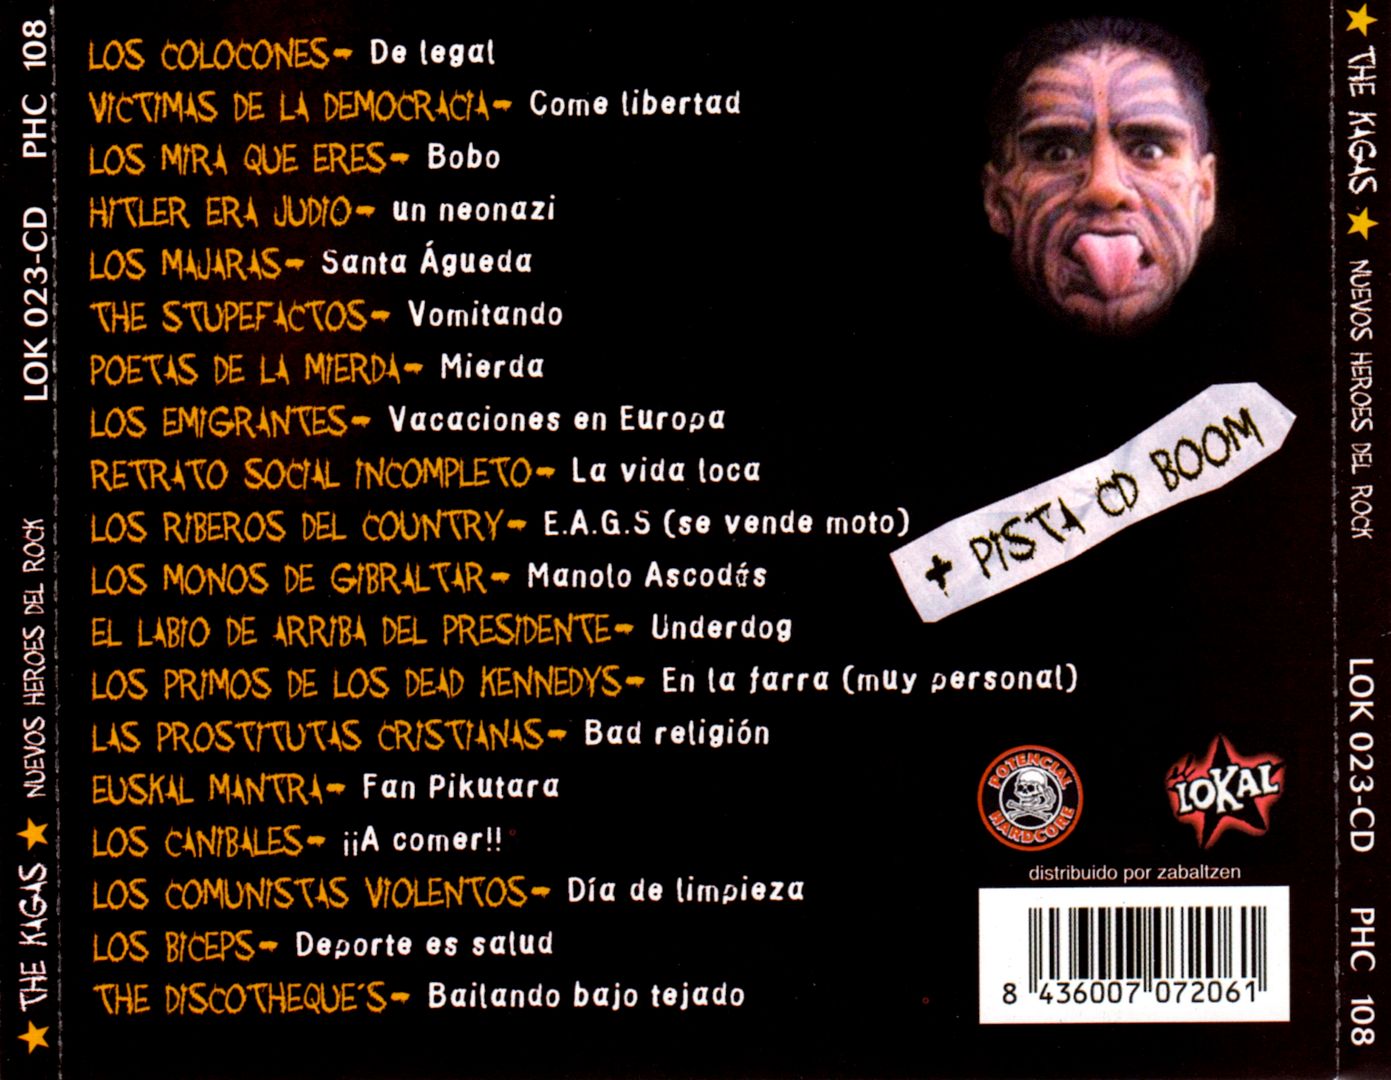 back 4 - The Kagas - Nuevos heroes del rock (2002)